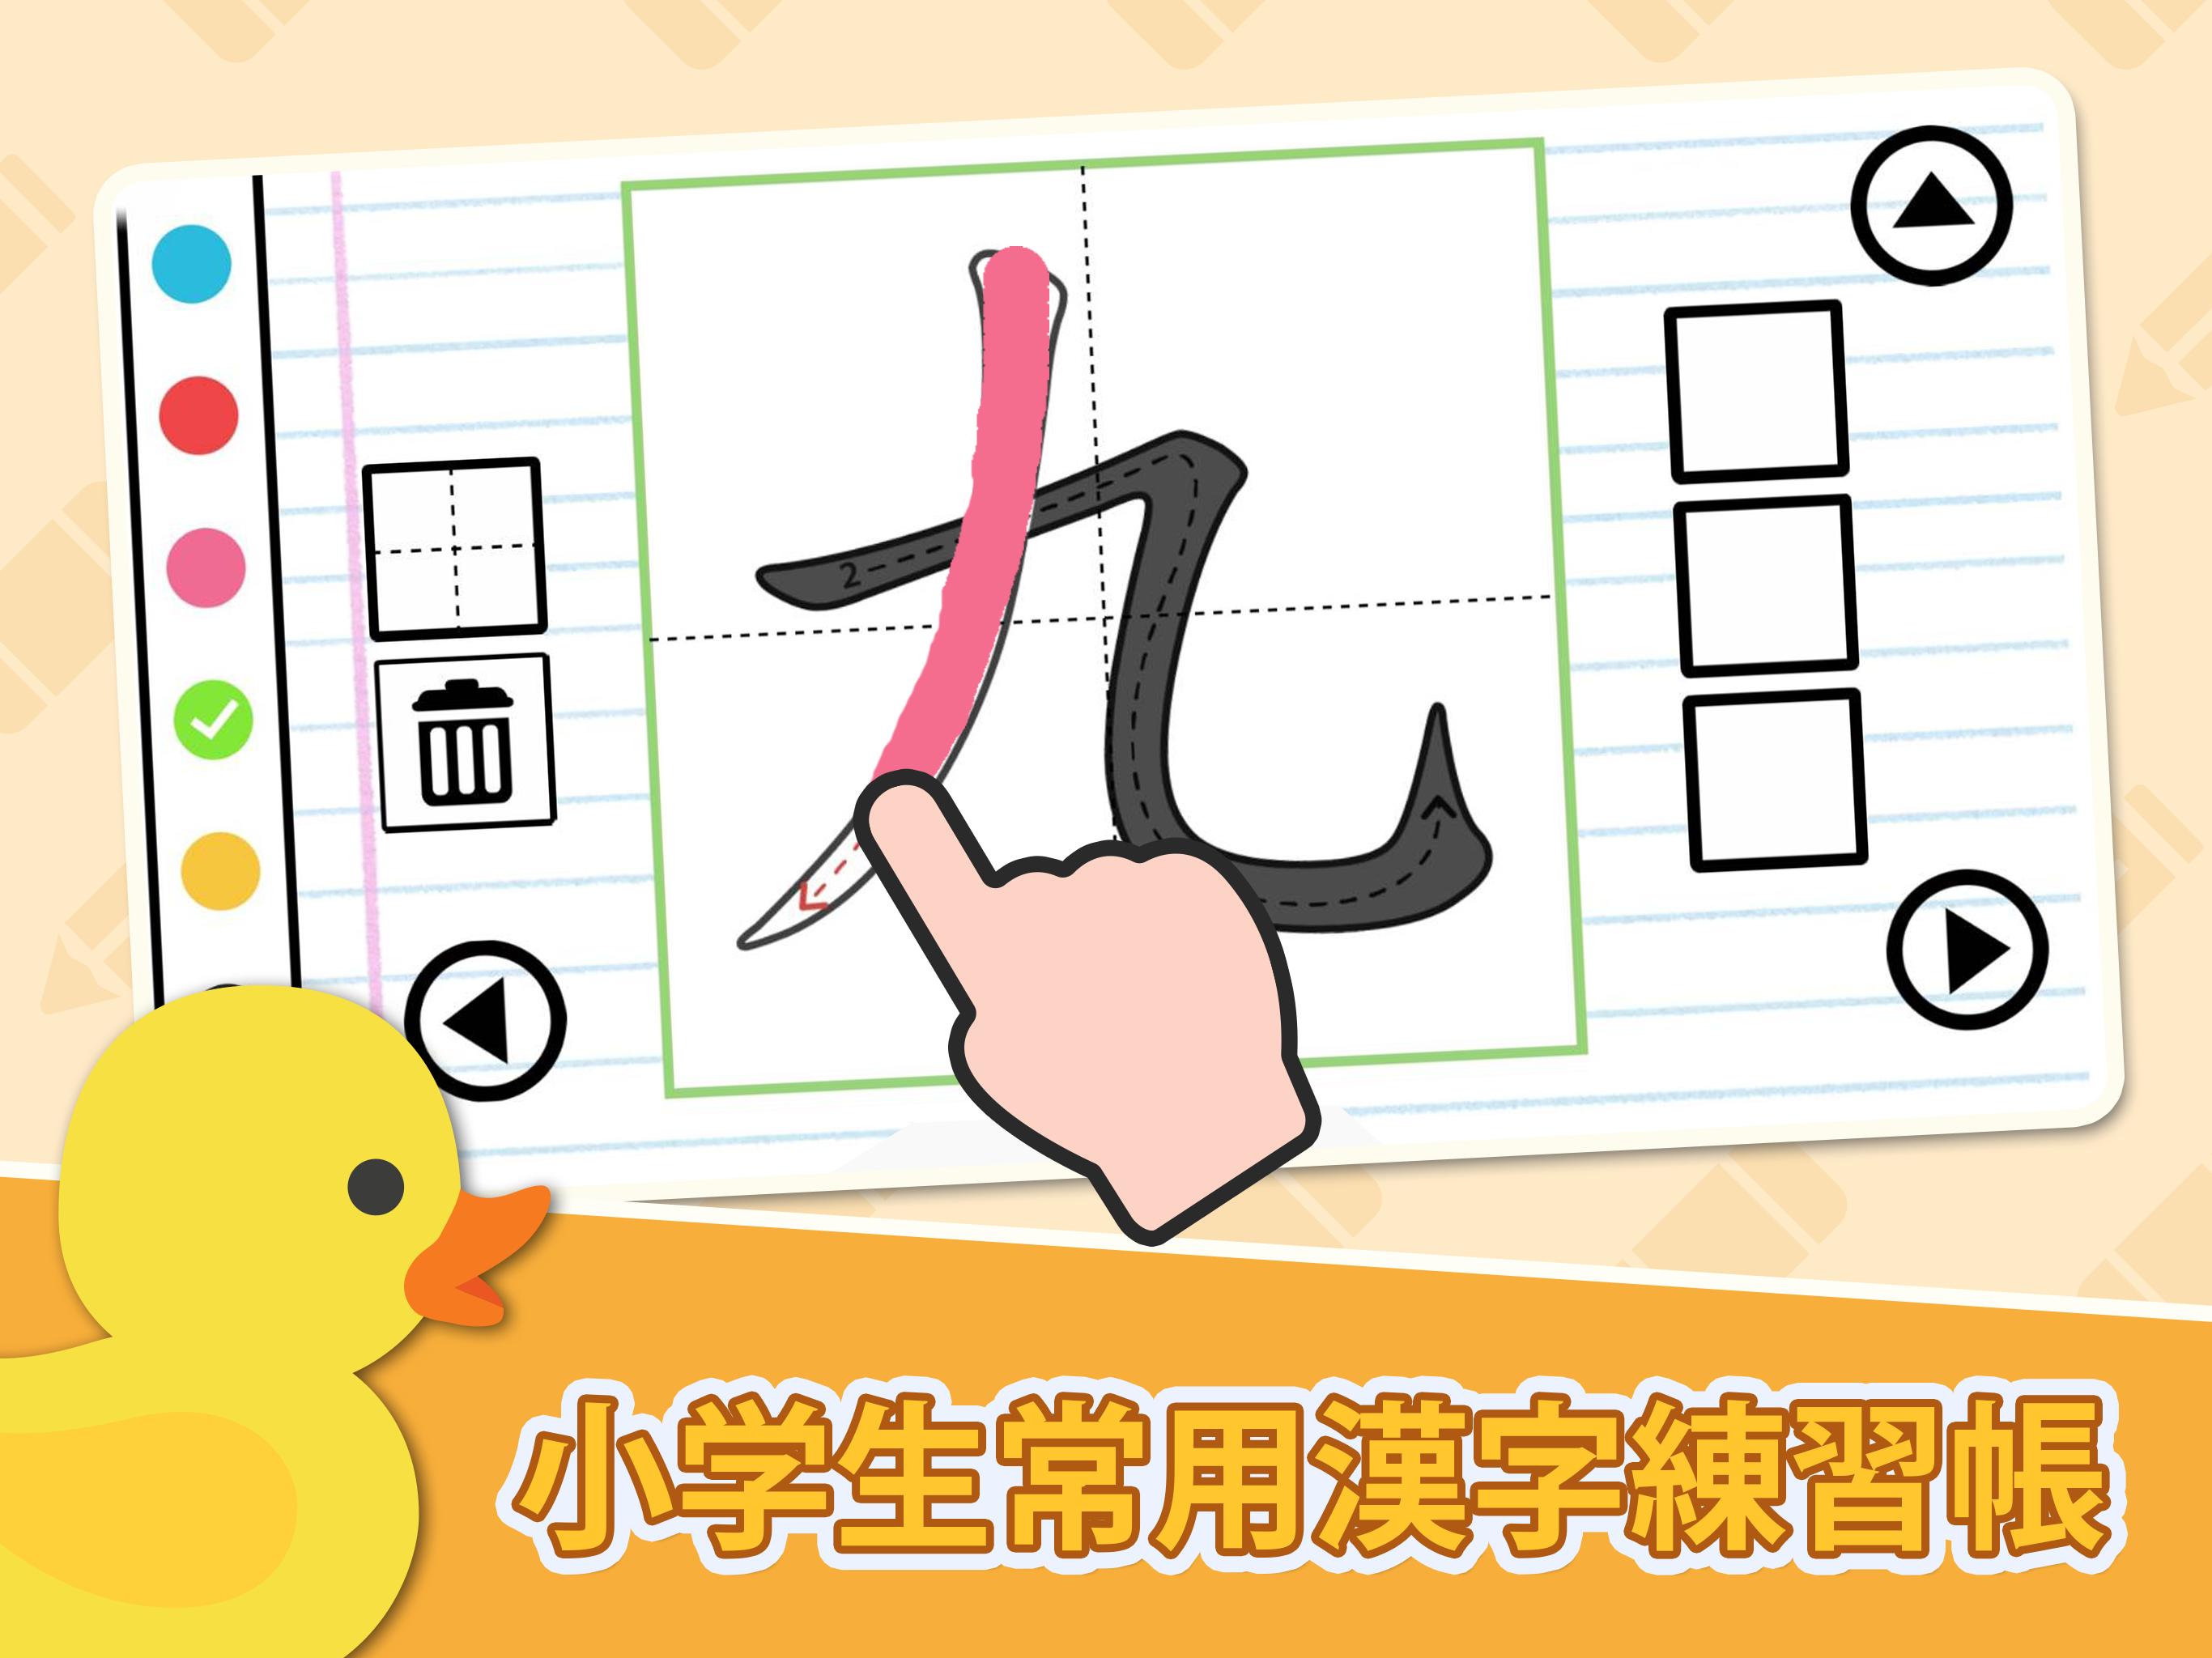 漢字の正しい書き順 筆順 アプリ 常用漢字手書き練習学習用アプリ 漢字検定にも便利無料筆順勉強アプリ Para Android Apk Baixar